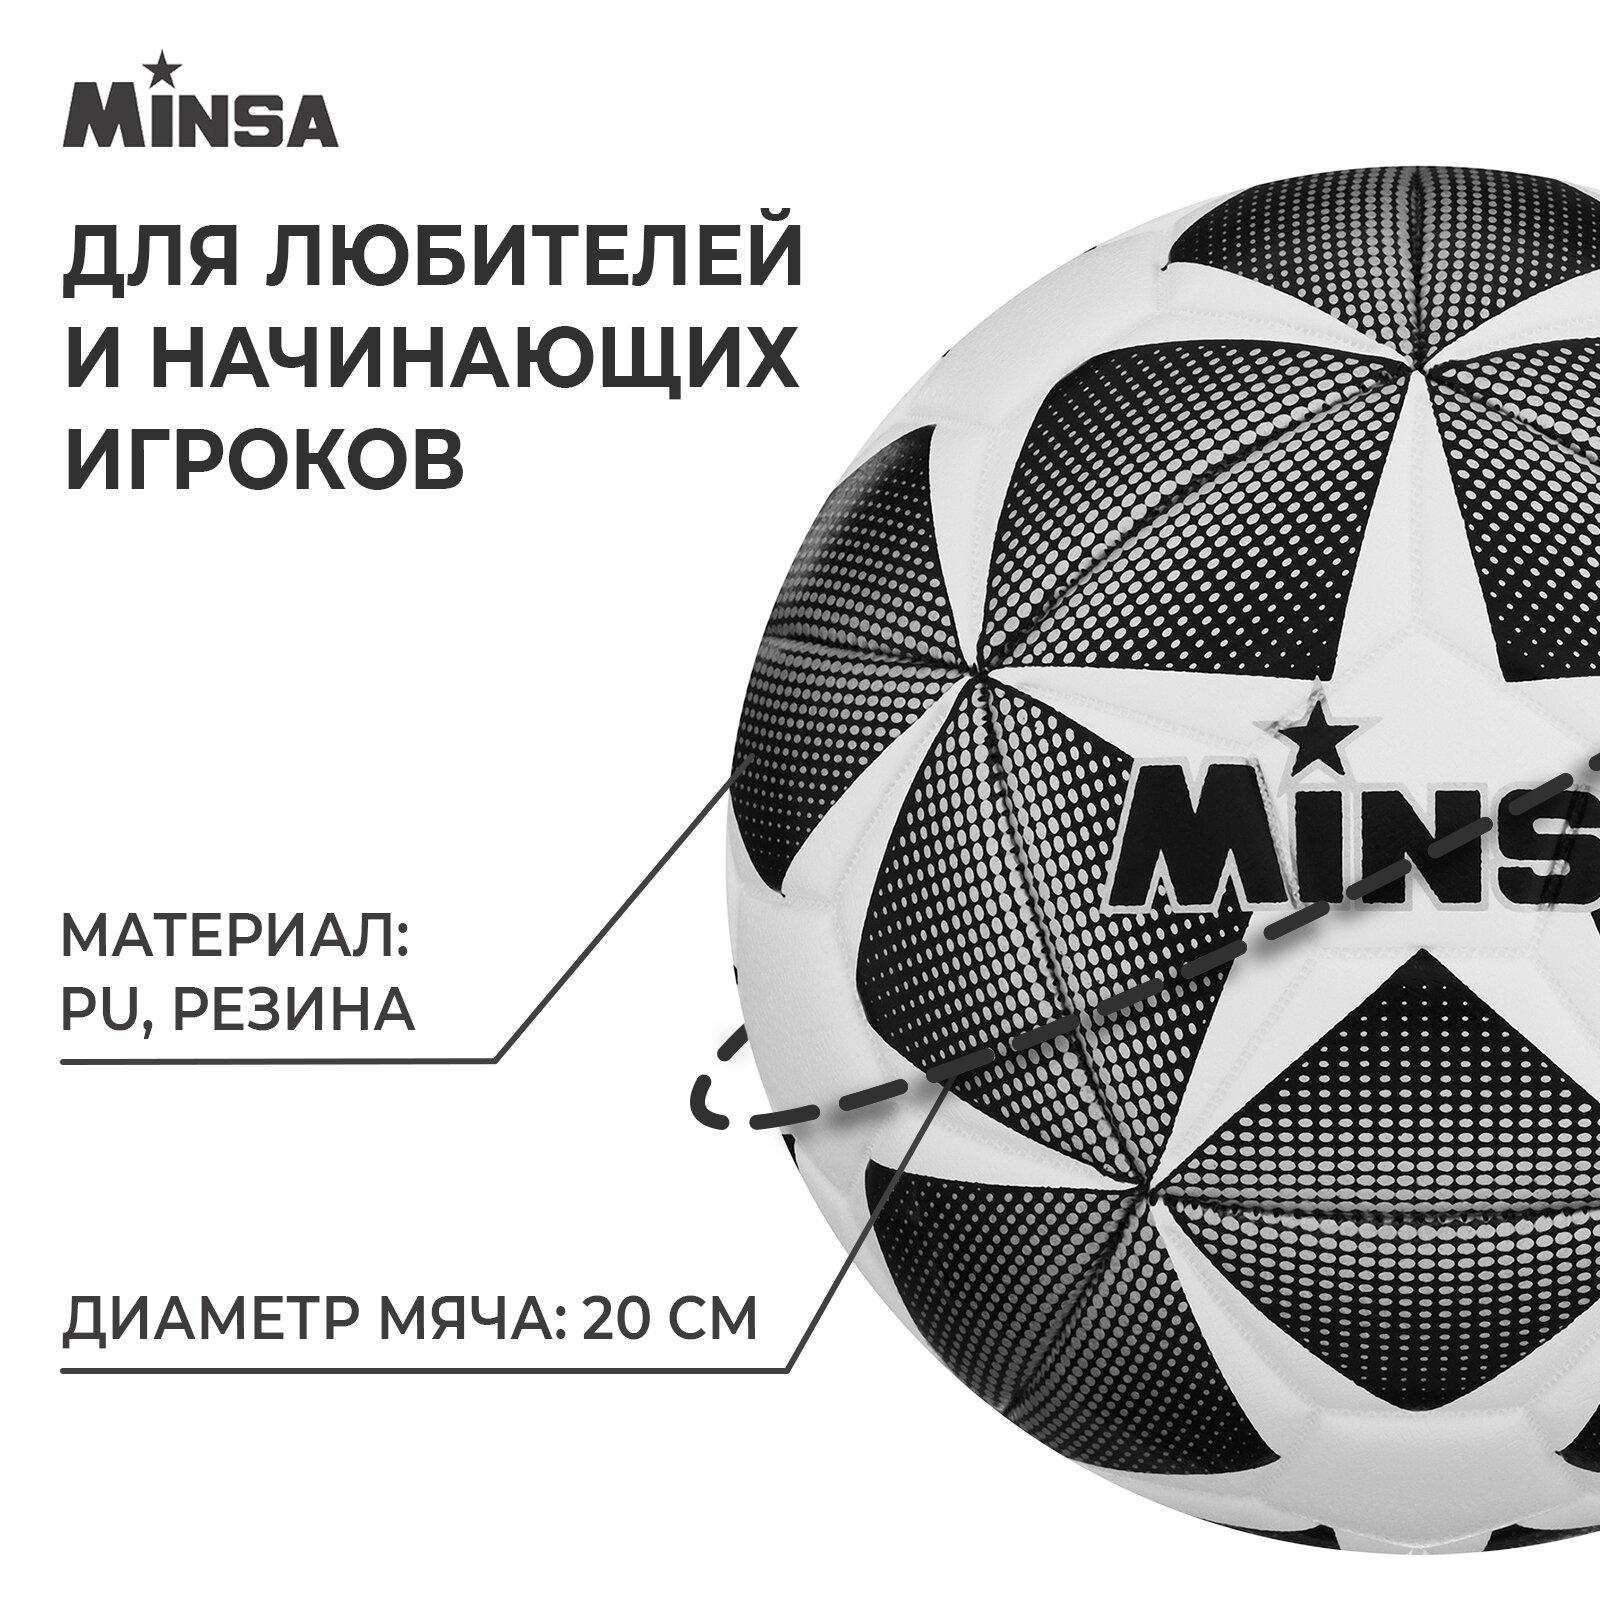 Мяч футбольный MINSA, черно-белый, размер 4, 32 панели, PU, 4 подслоя